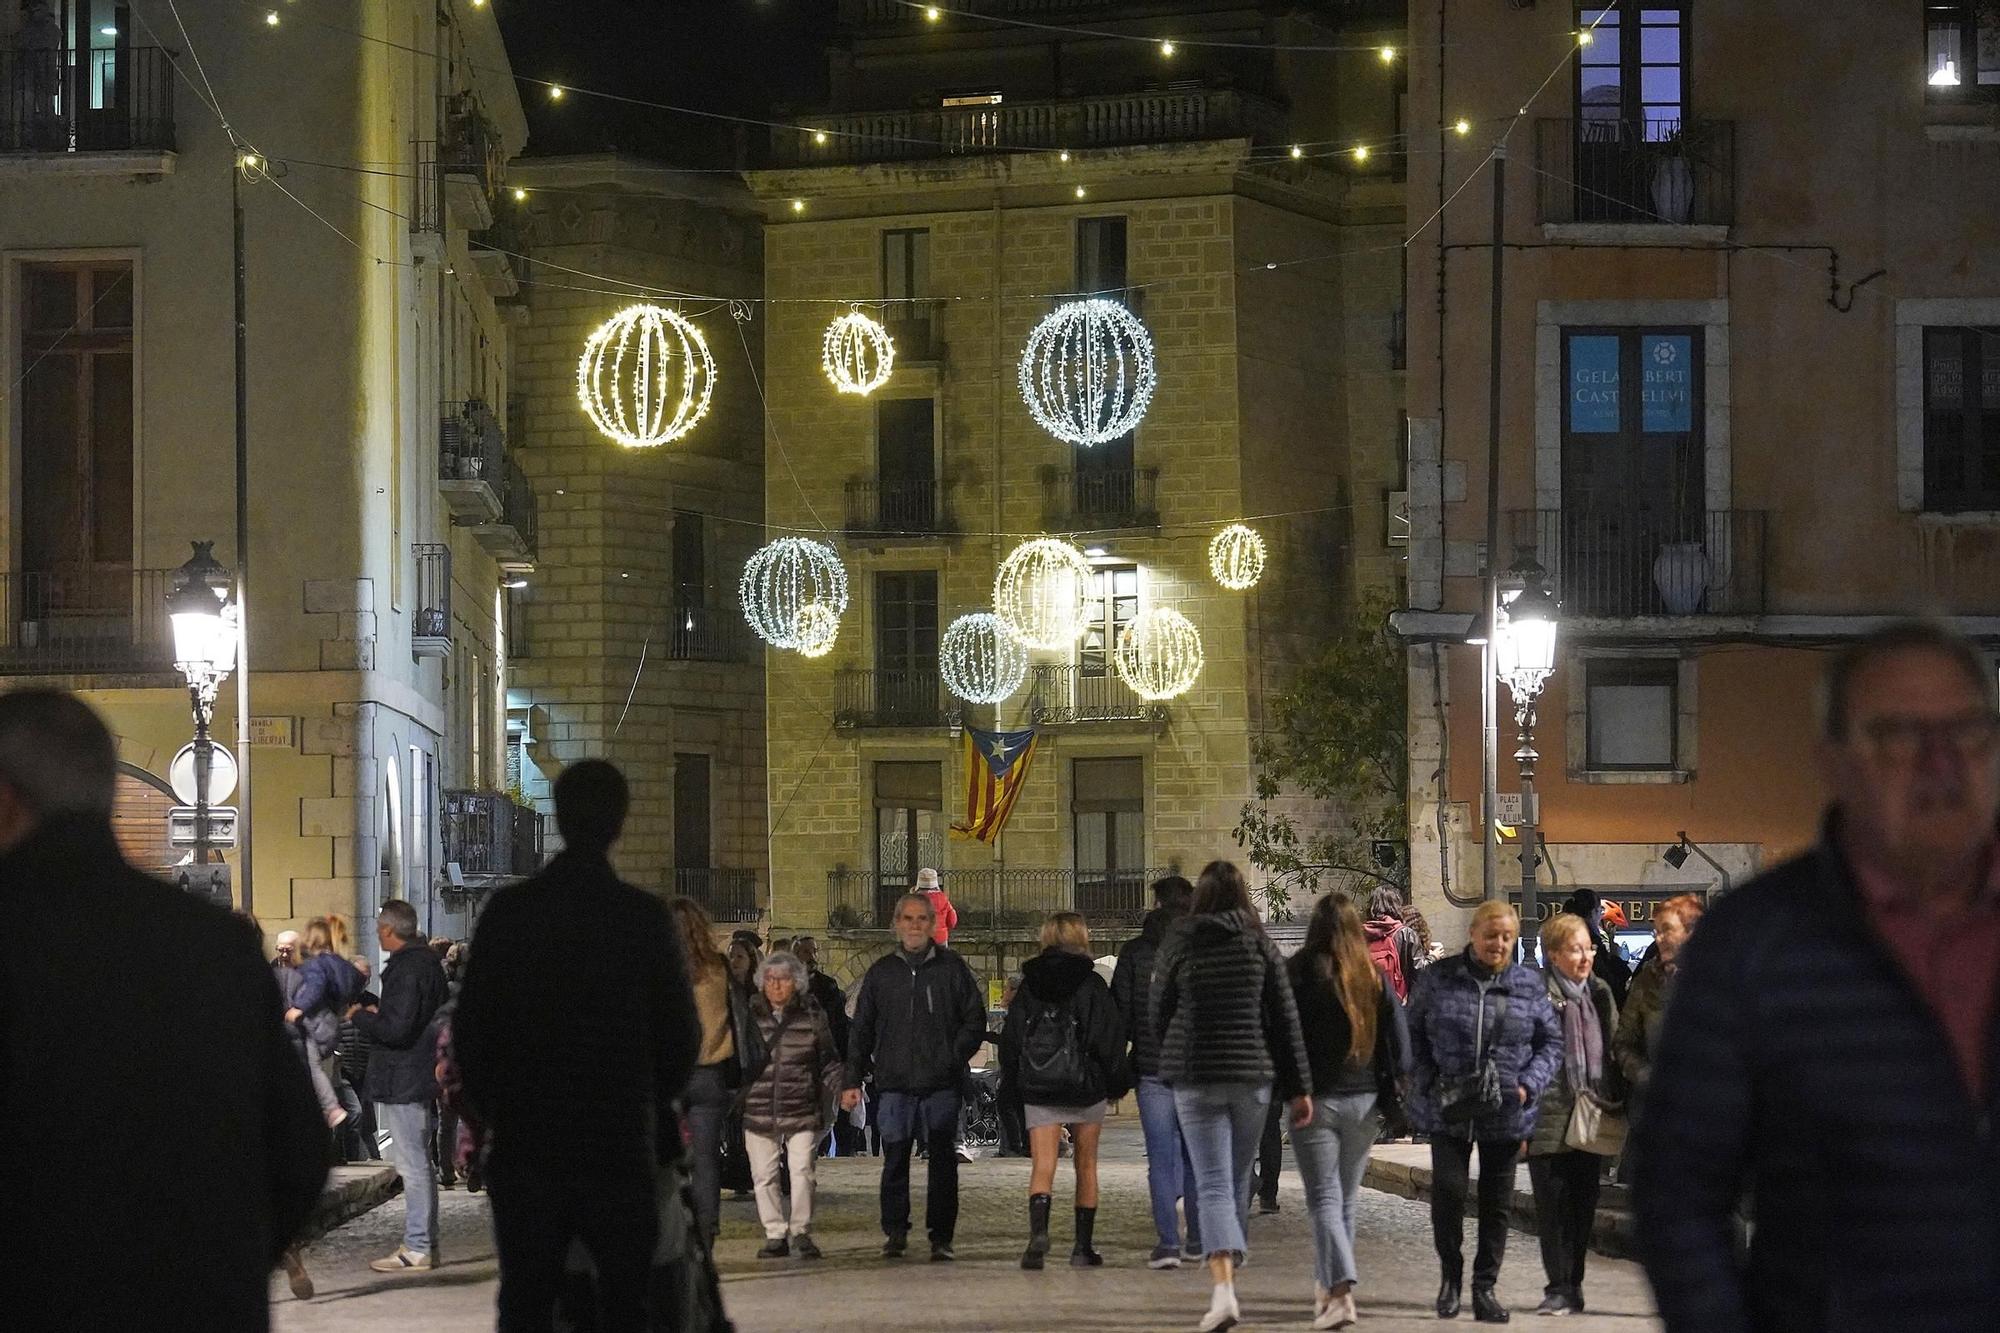 Galeria d'imatges: La tradicional encesa de l’arbre de Nadal de la plaça Catalunya acapara l’expectació de grans i petits